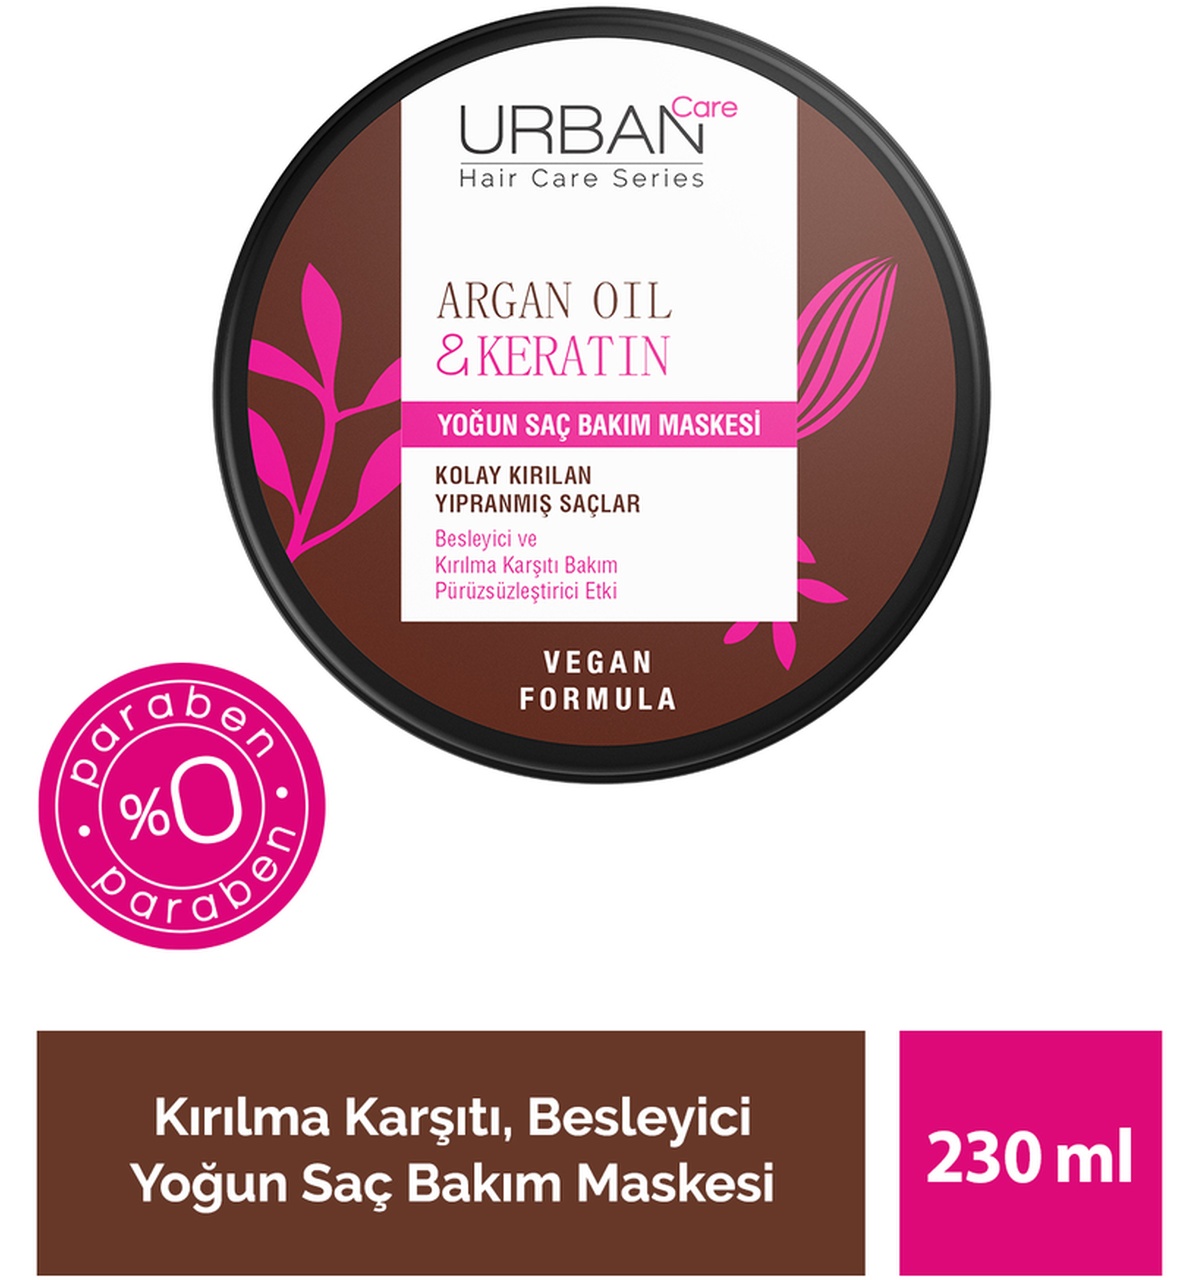 Urban Care Argan Oil & Keratin Kolay Kırılan Saçlara Özel Yoğun Saç Bakım Maskesi 230 ML